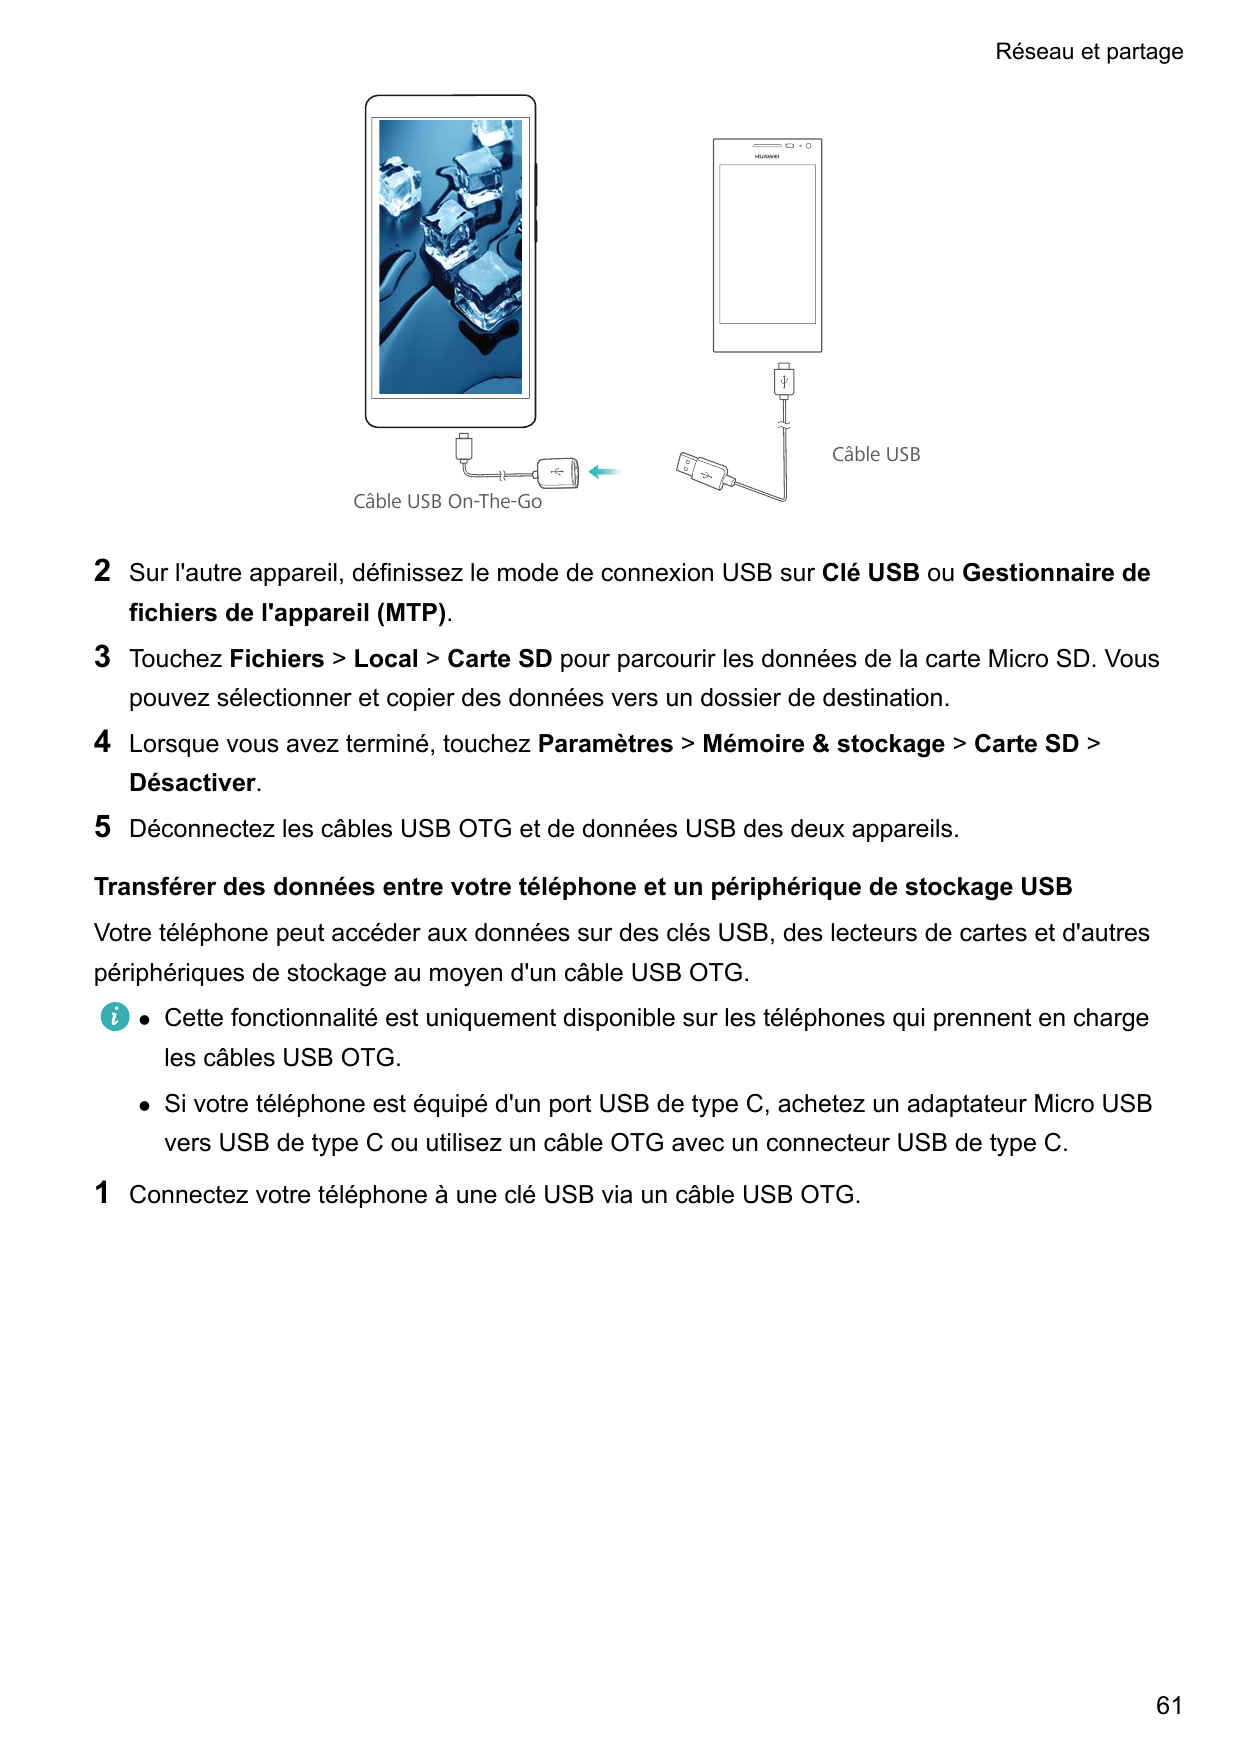 Réseau et partageCâble USBCâble USB On-The-Go2Sur l'autre appareil, définissez le mode de connexion USB sur Clé USB ou Gestionna